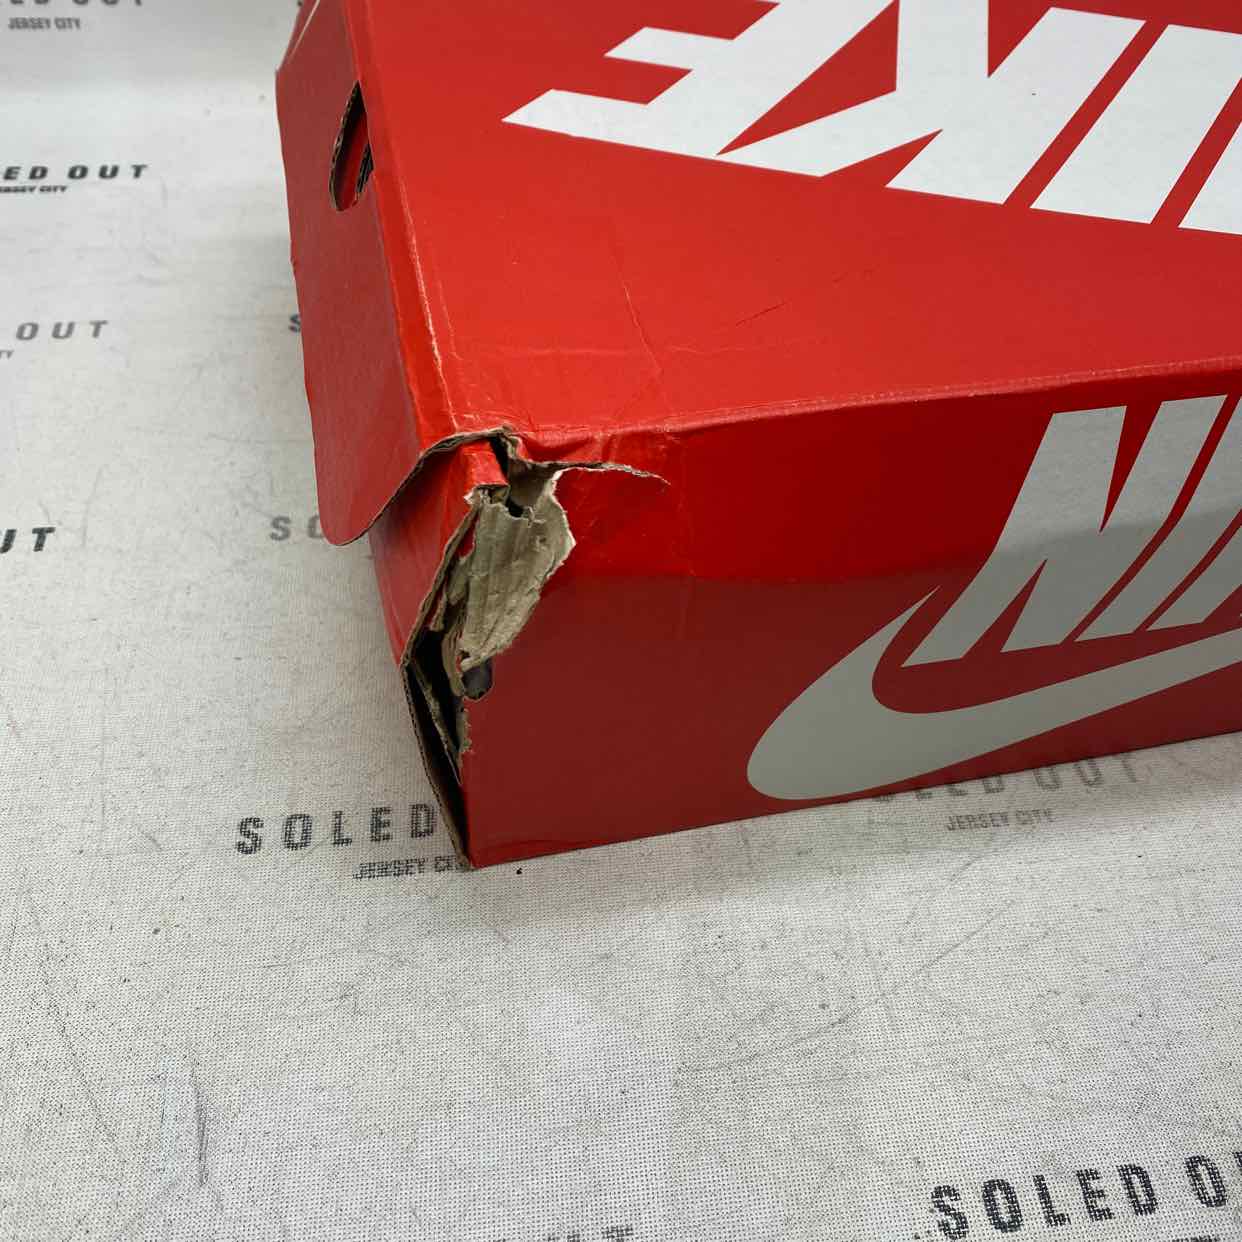 Nike Dunk High Retro "VAST GREY" 2021 New Damaged Box Size 9.5